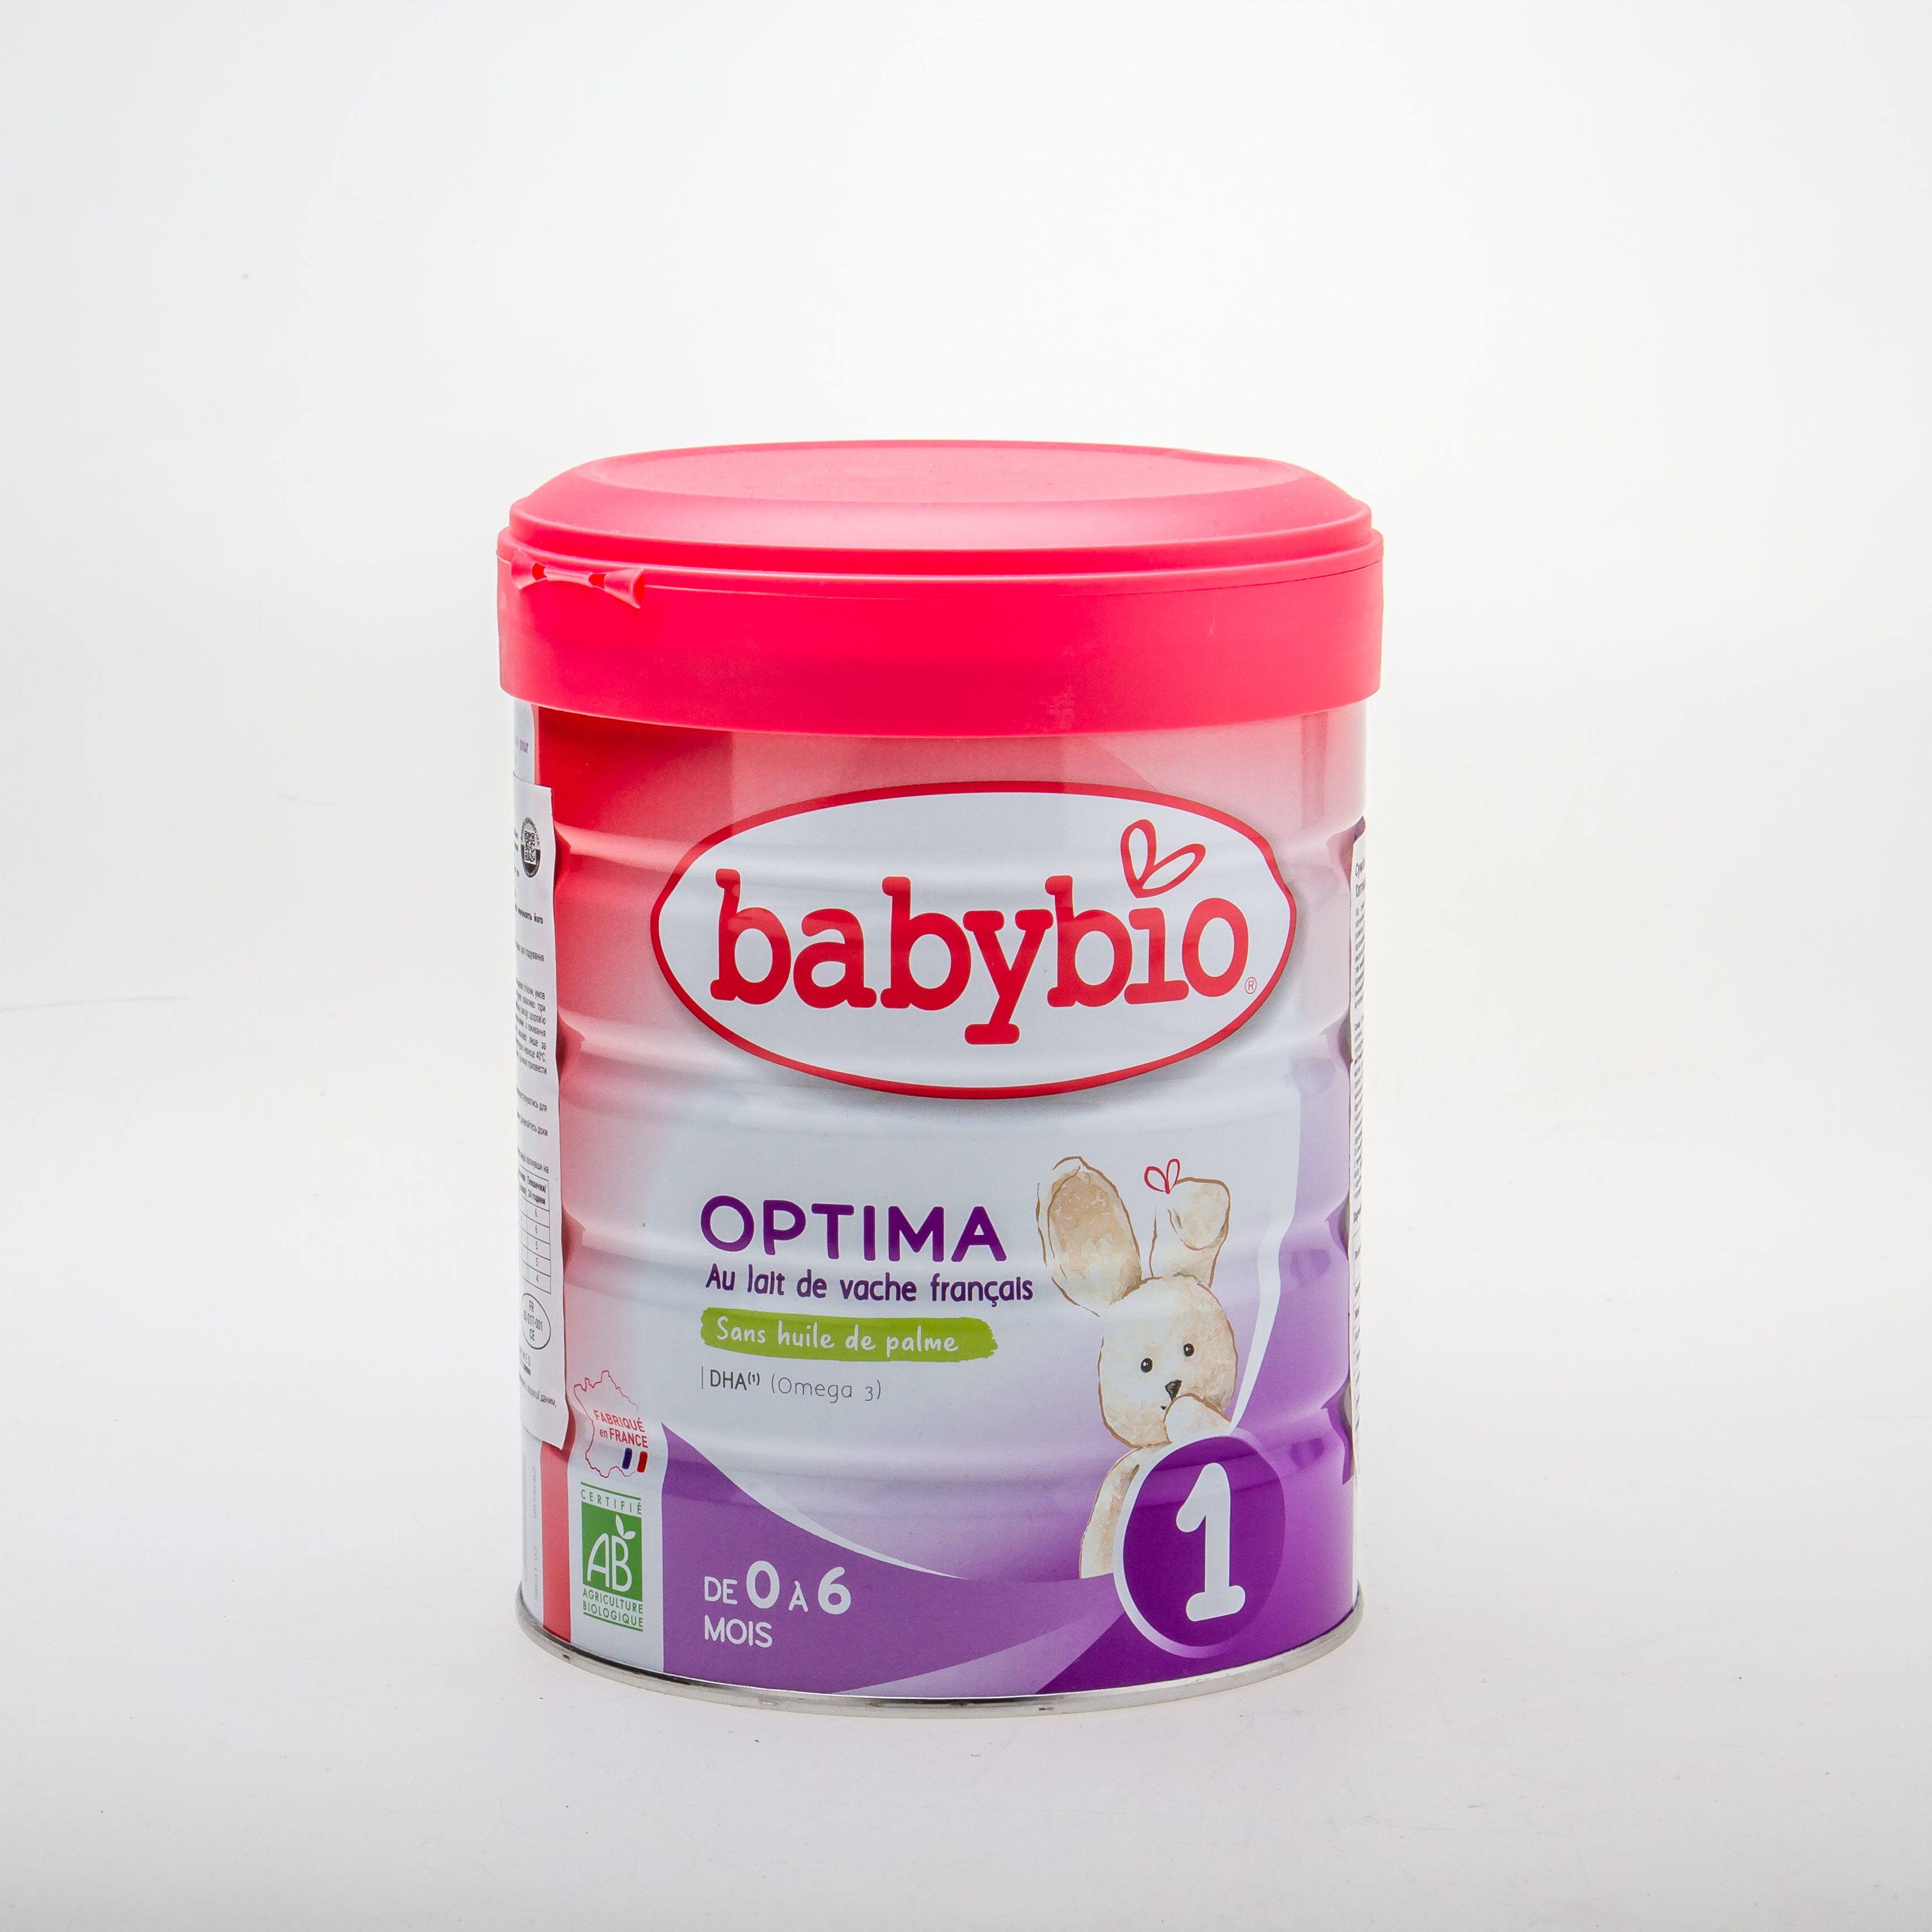 BabyBio Optima1 Суміш дитяча молочна органічна для годування немовлят від народження до 6 місяців - купить в интернет-магазине Юнимед